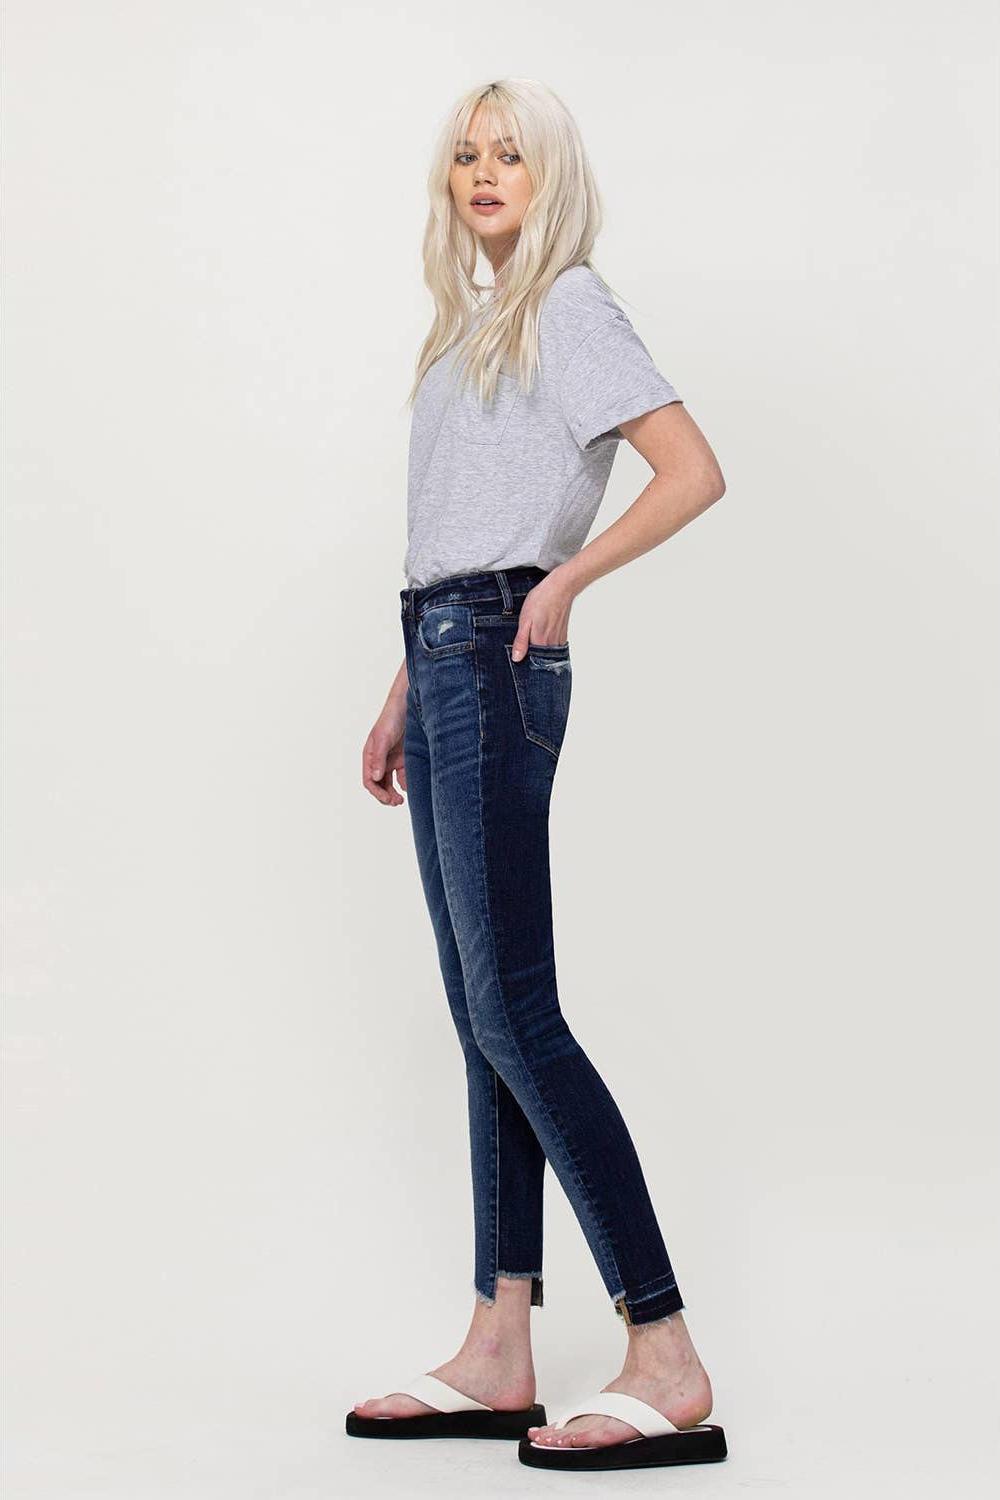 Poplooks Women's 4 Way Stretchy Ponte Knit Capri Skinny Jeans